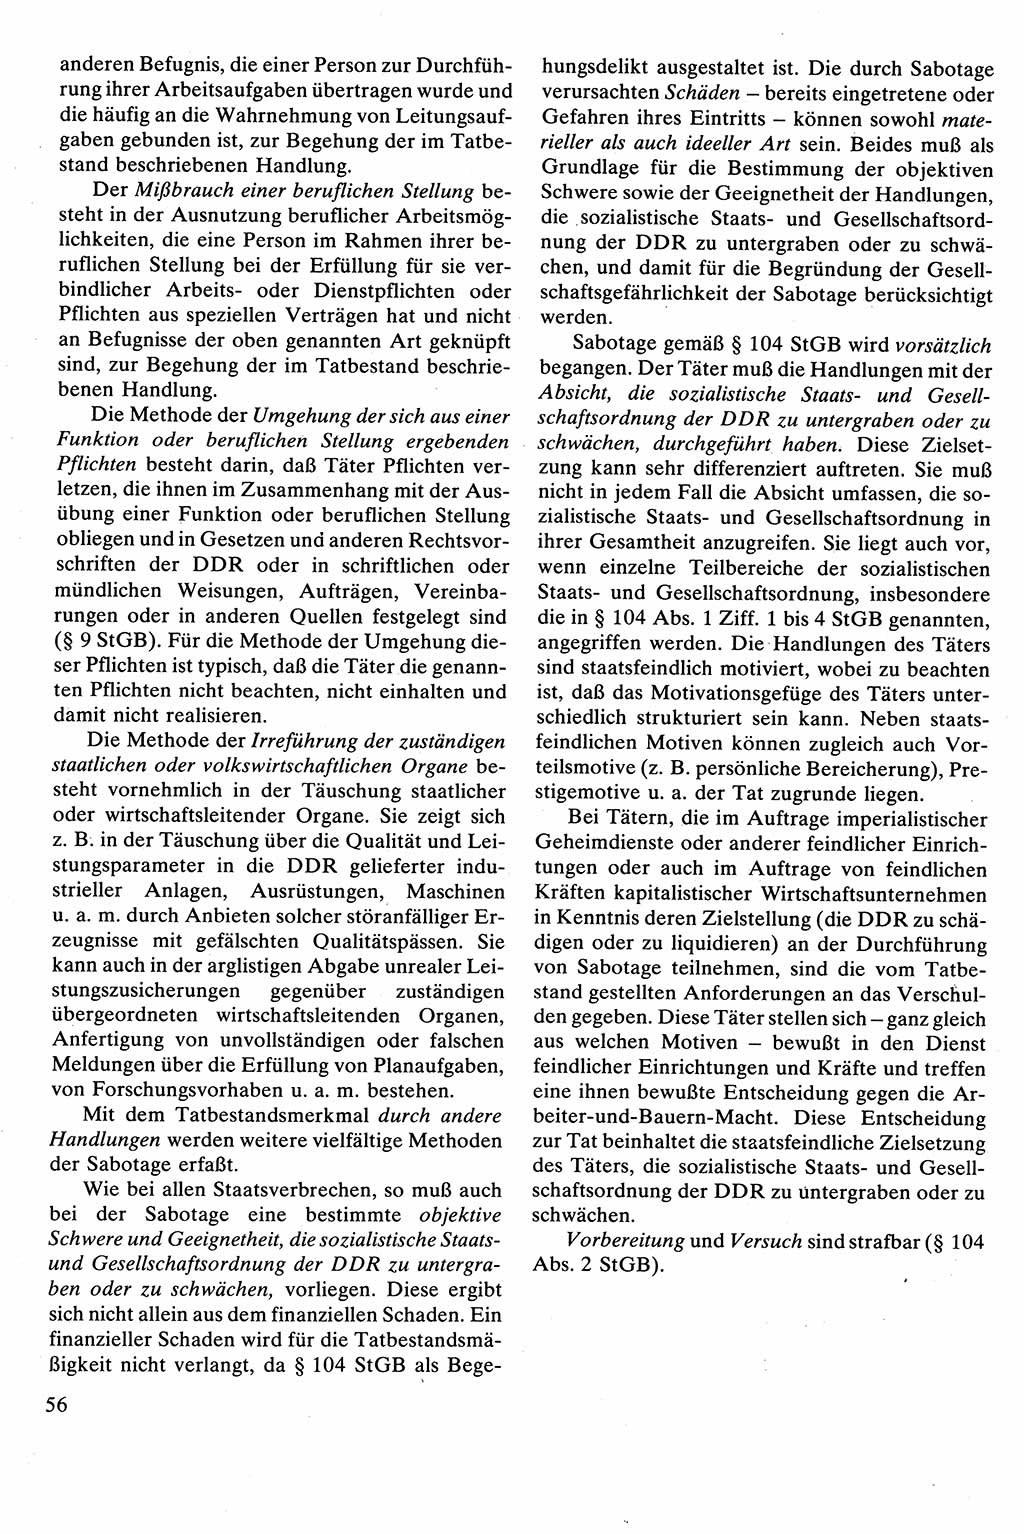 Strafrecht [Deutsche Demokratische Republik (DDR)], Besonderer Teil, Lehrbuch 1981, Seite 56 (Strafr. DDR BT Lb. 1981, S. 56)